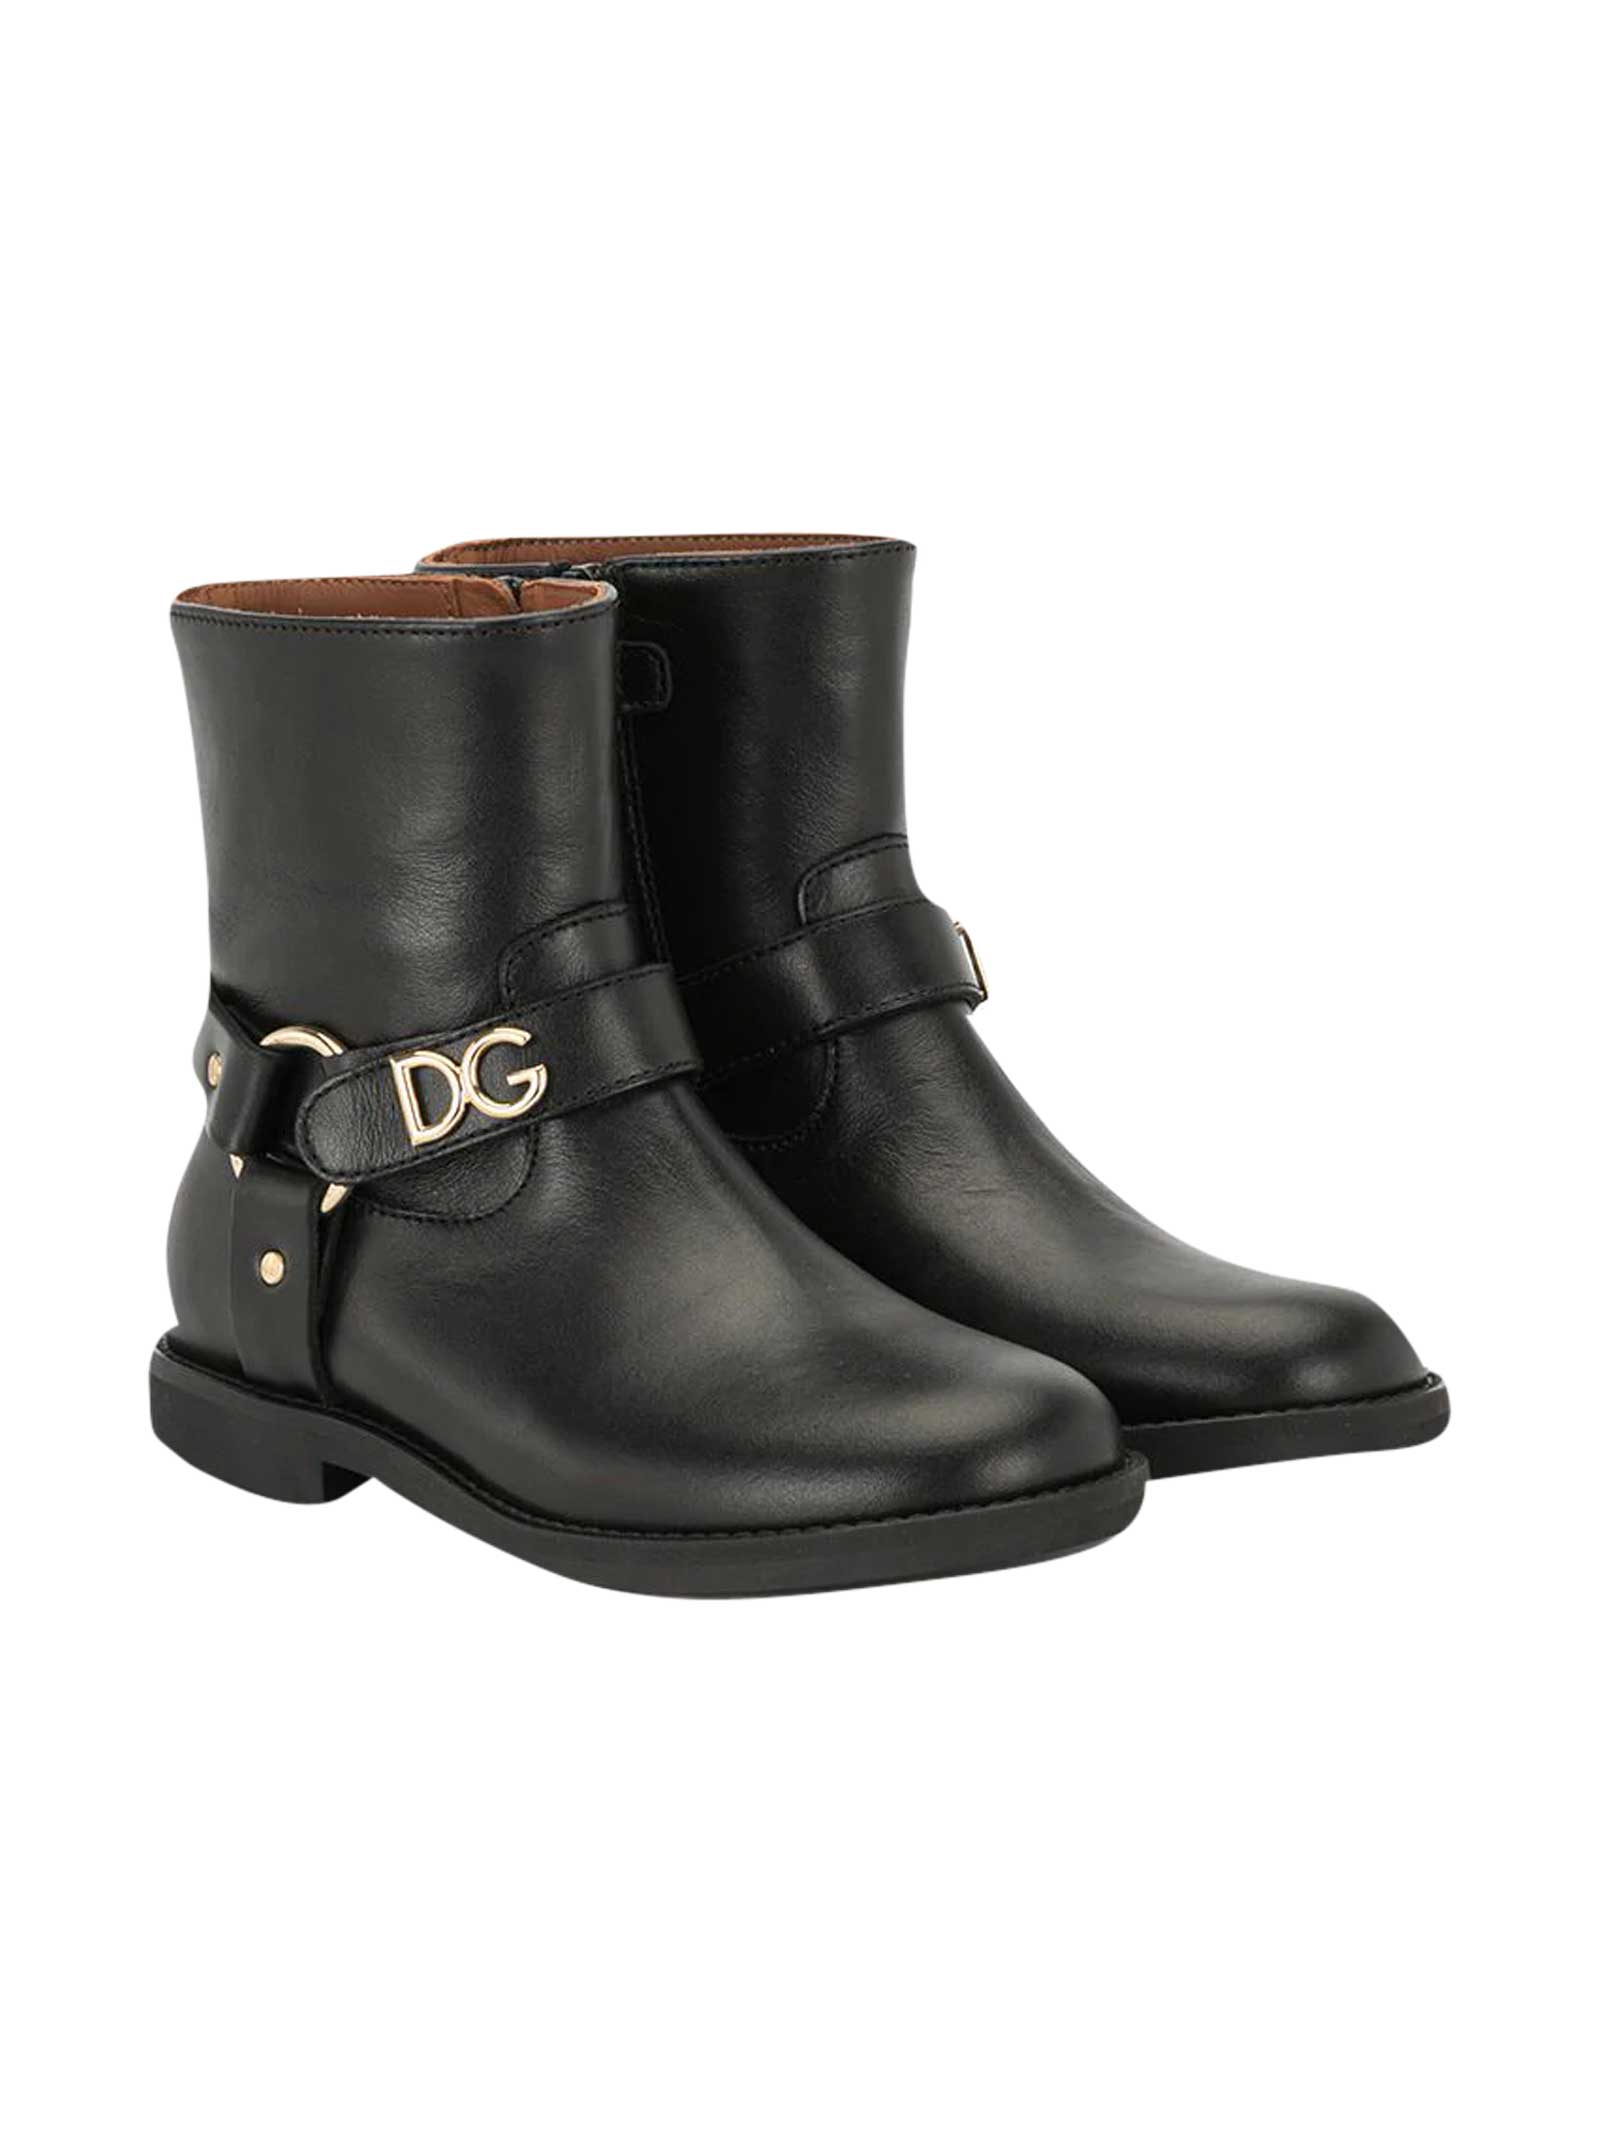 Dolce & Gabbana D & g Boots